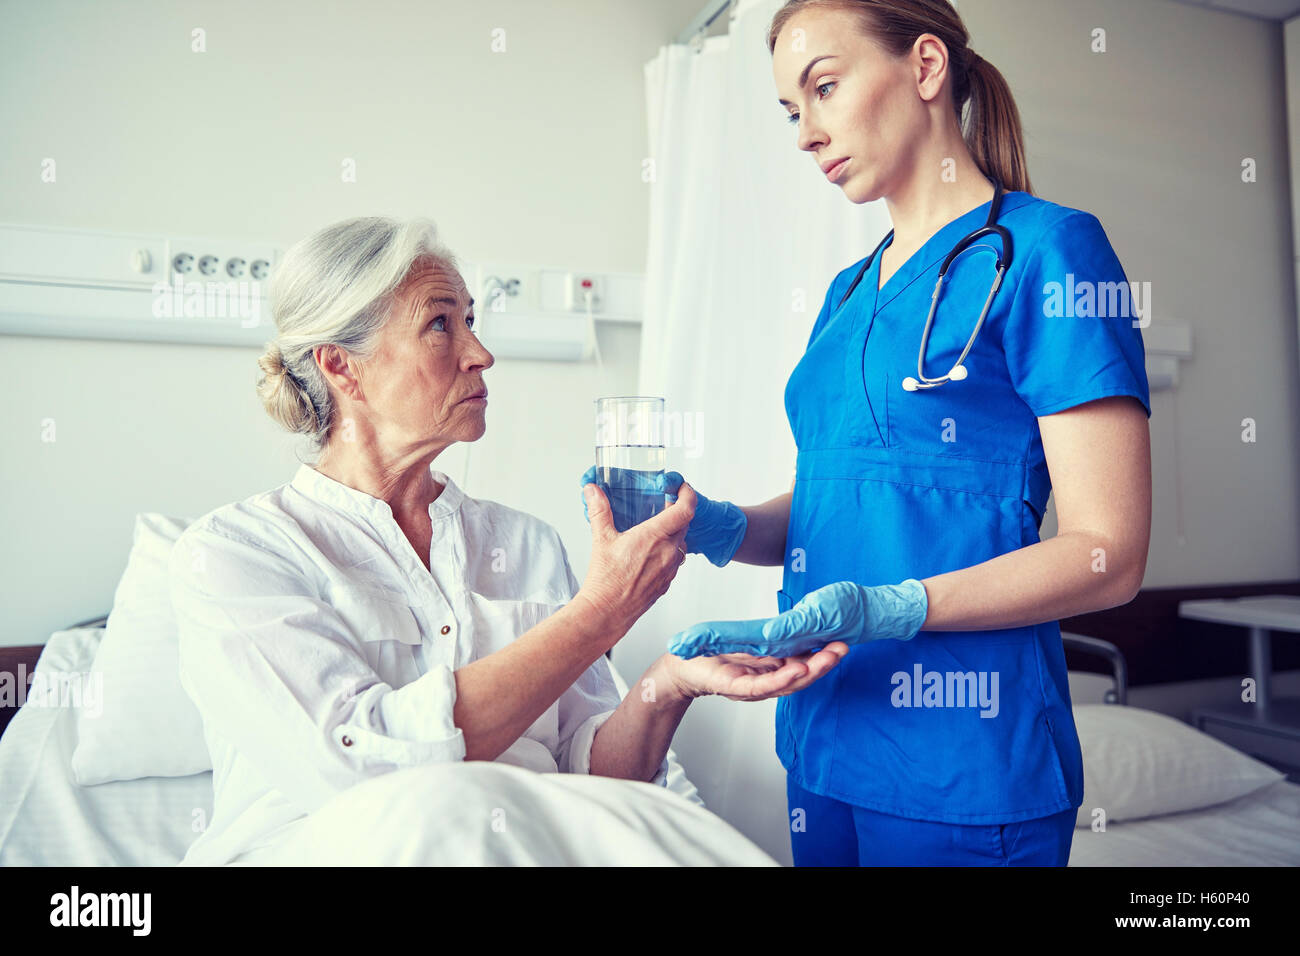 Медсестра пришла больному. Медсестра с больными. Медицинская сестра и пациент. Медсестра помогает пациенту. Стационар для пожилых.